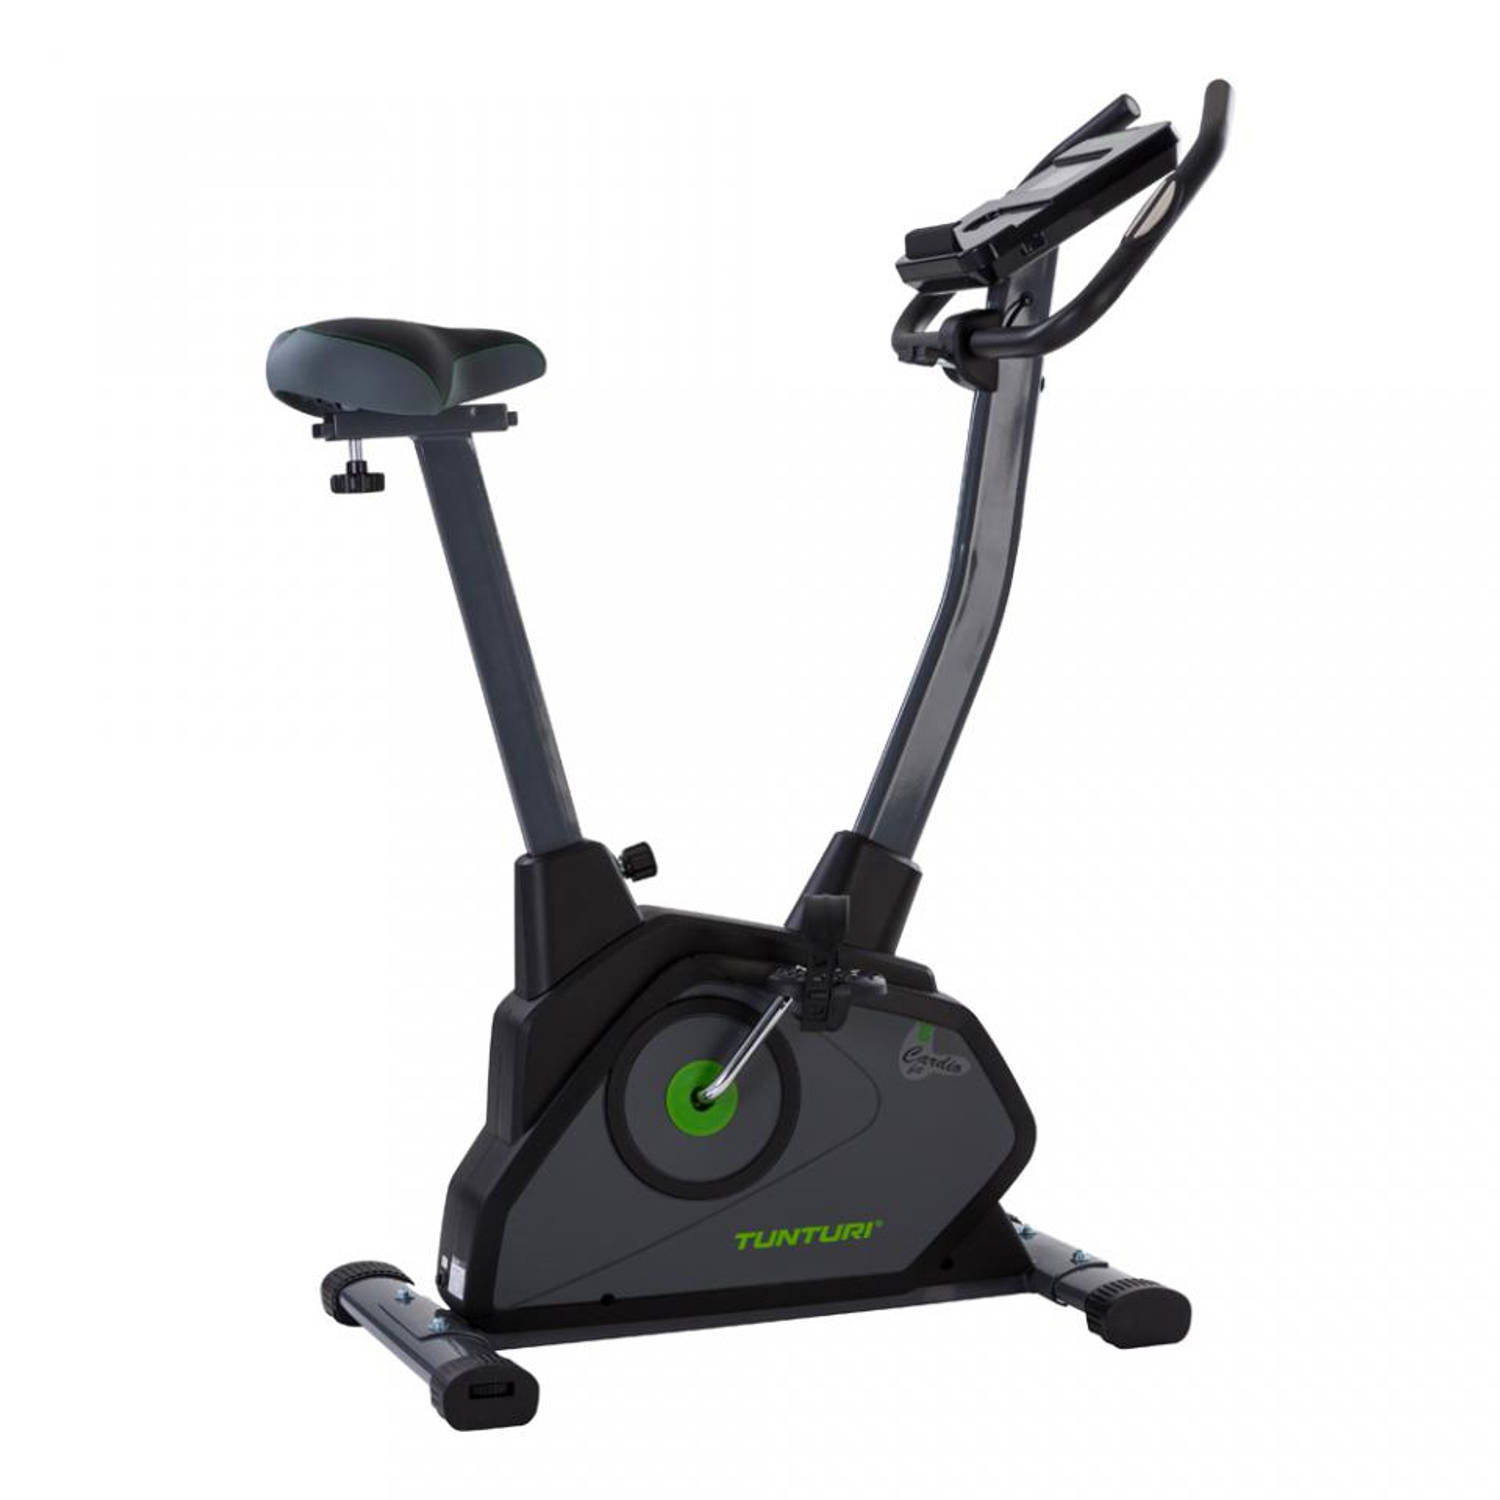 Tunturi Cardio Fit E35 Hometrainer - Ergometer - Bluetooth - fitnessfiets met 12 verschillende trainingsprogramma's - Comfort plus zadel